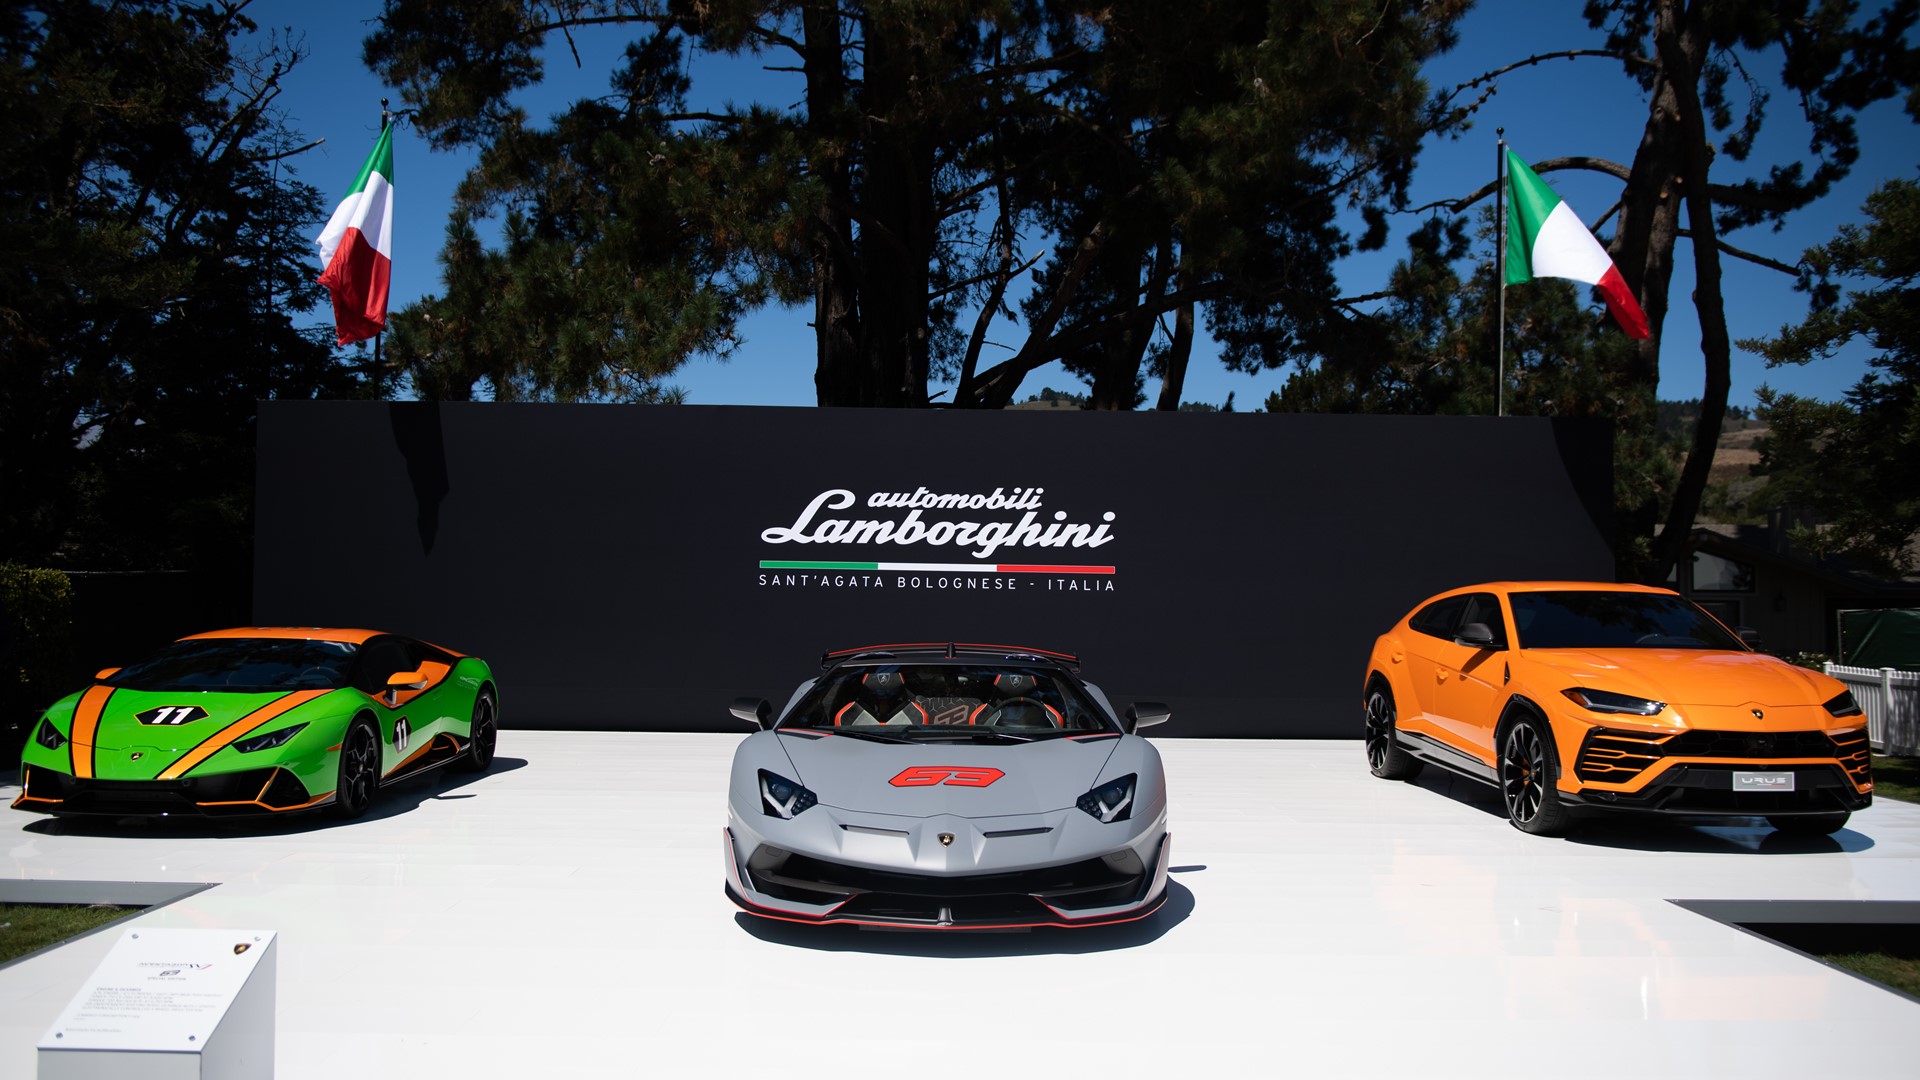 Lamborghini Display